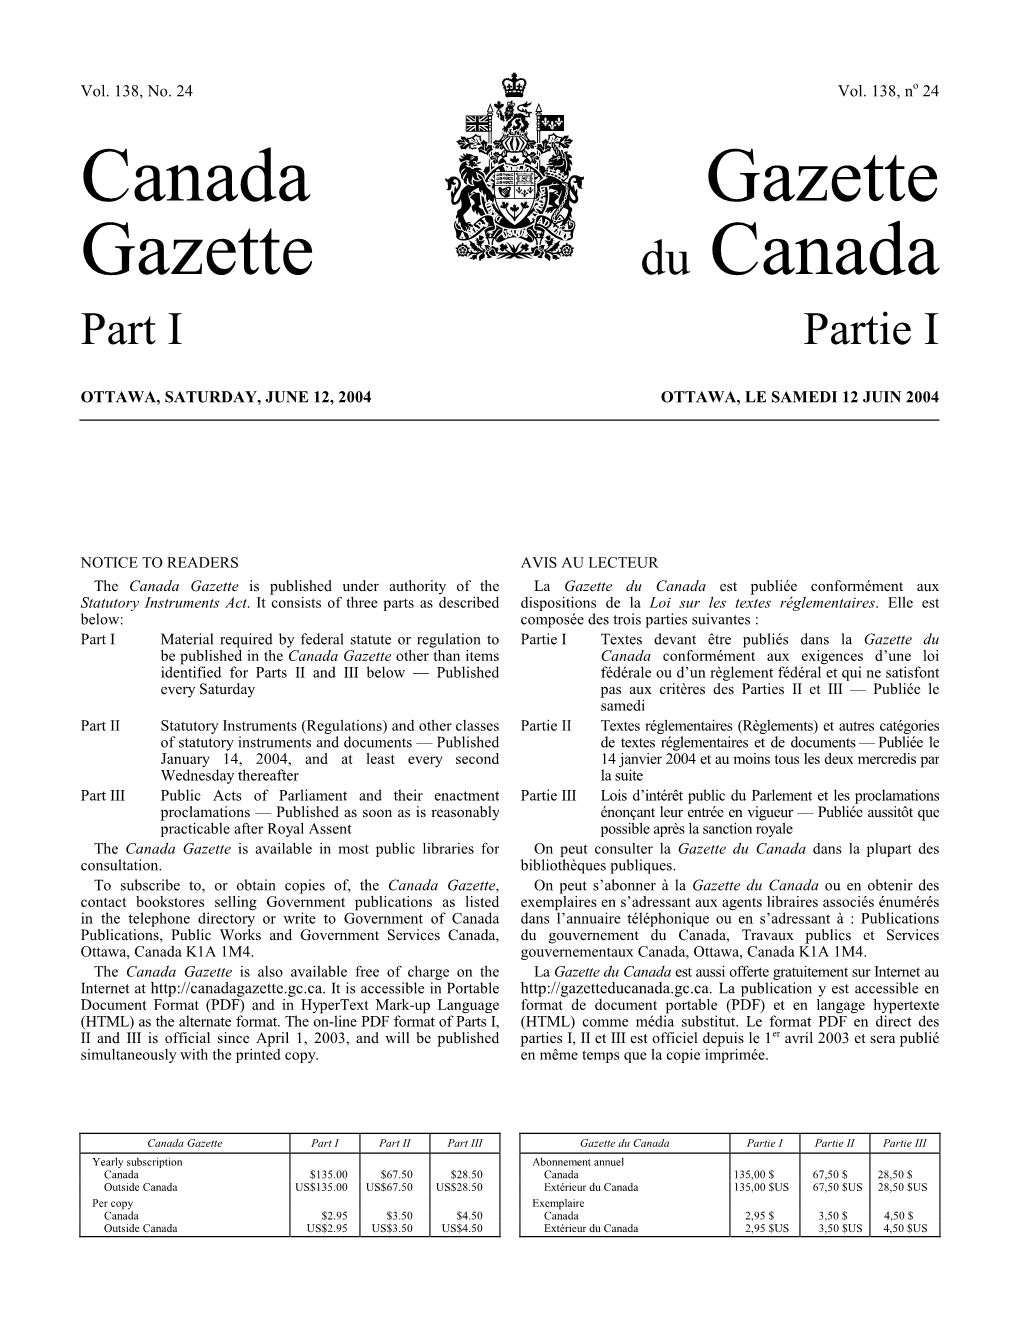 Canada Gazette, Part I, January 31, 1998 1 Supplément, Gazette Du Canada, Partie I, 31 Janvier 1998